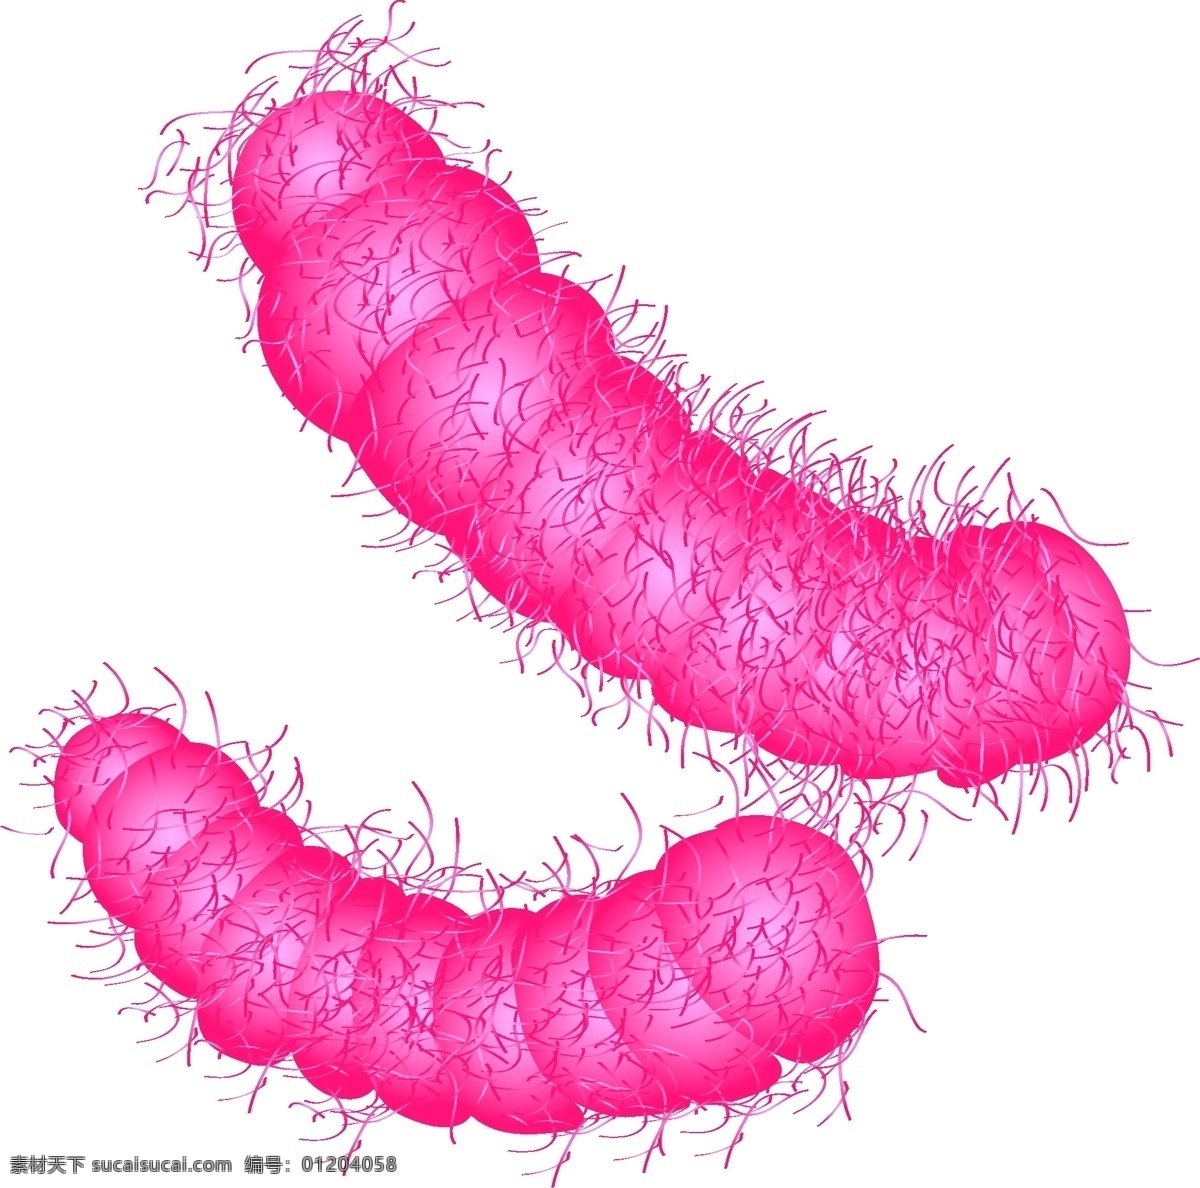 矢量 免 扣 粉色 细菌 立体细菌 卡通病毒 大肠杆菌 细菌病毒 微观世界 细胞 生物学 螨虫 微生物 科学研究